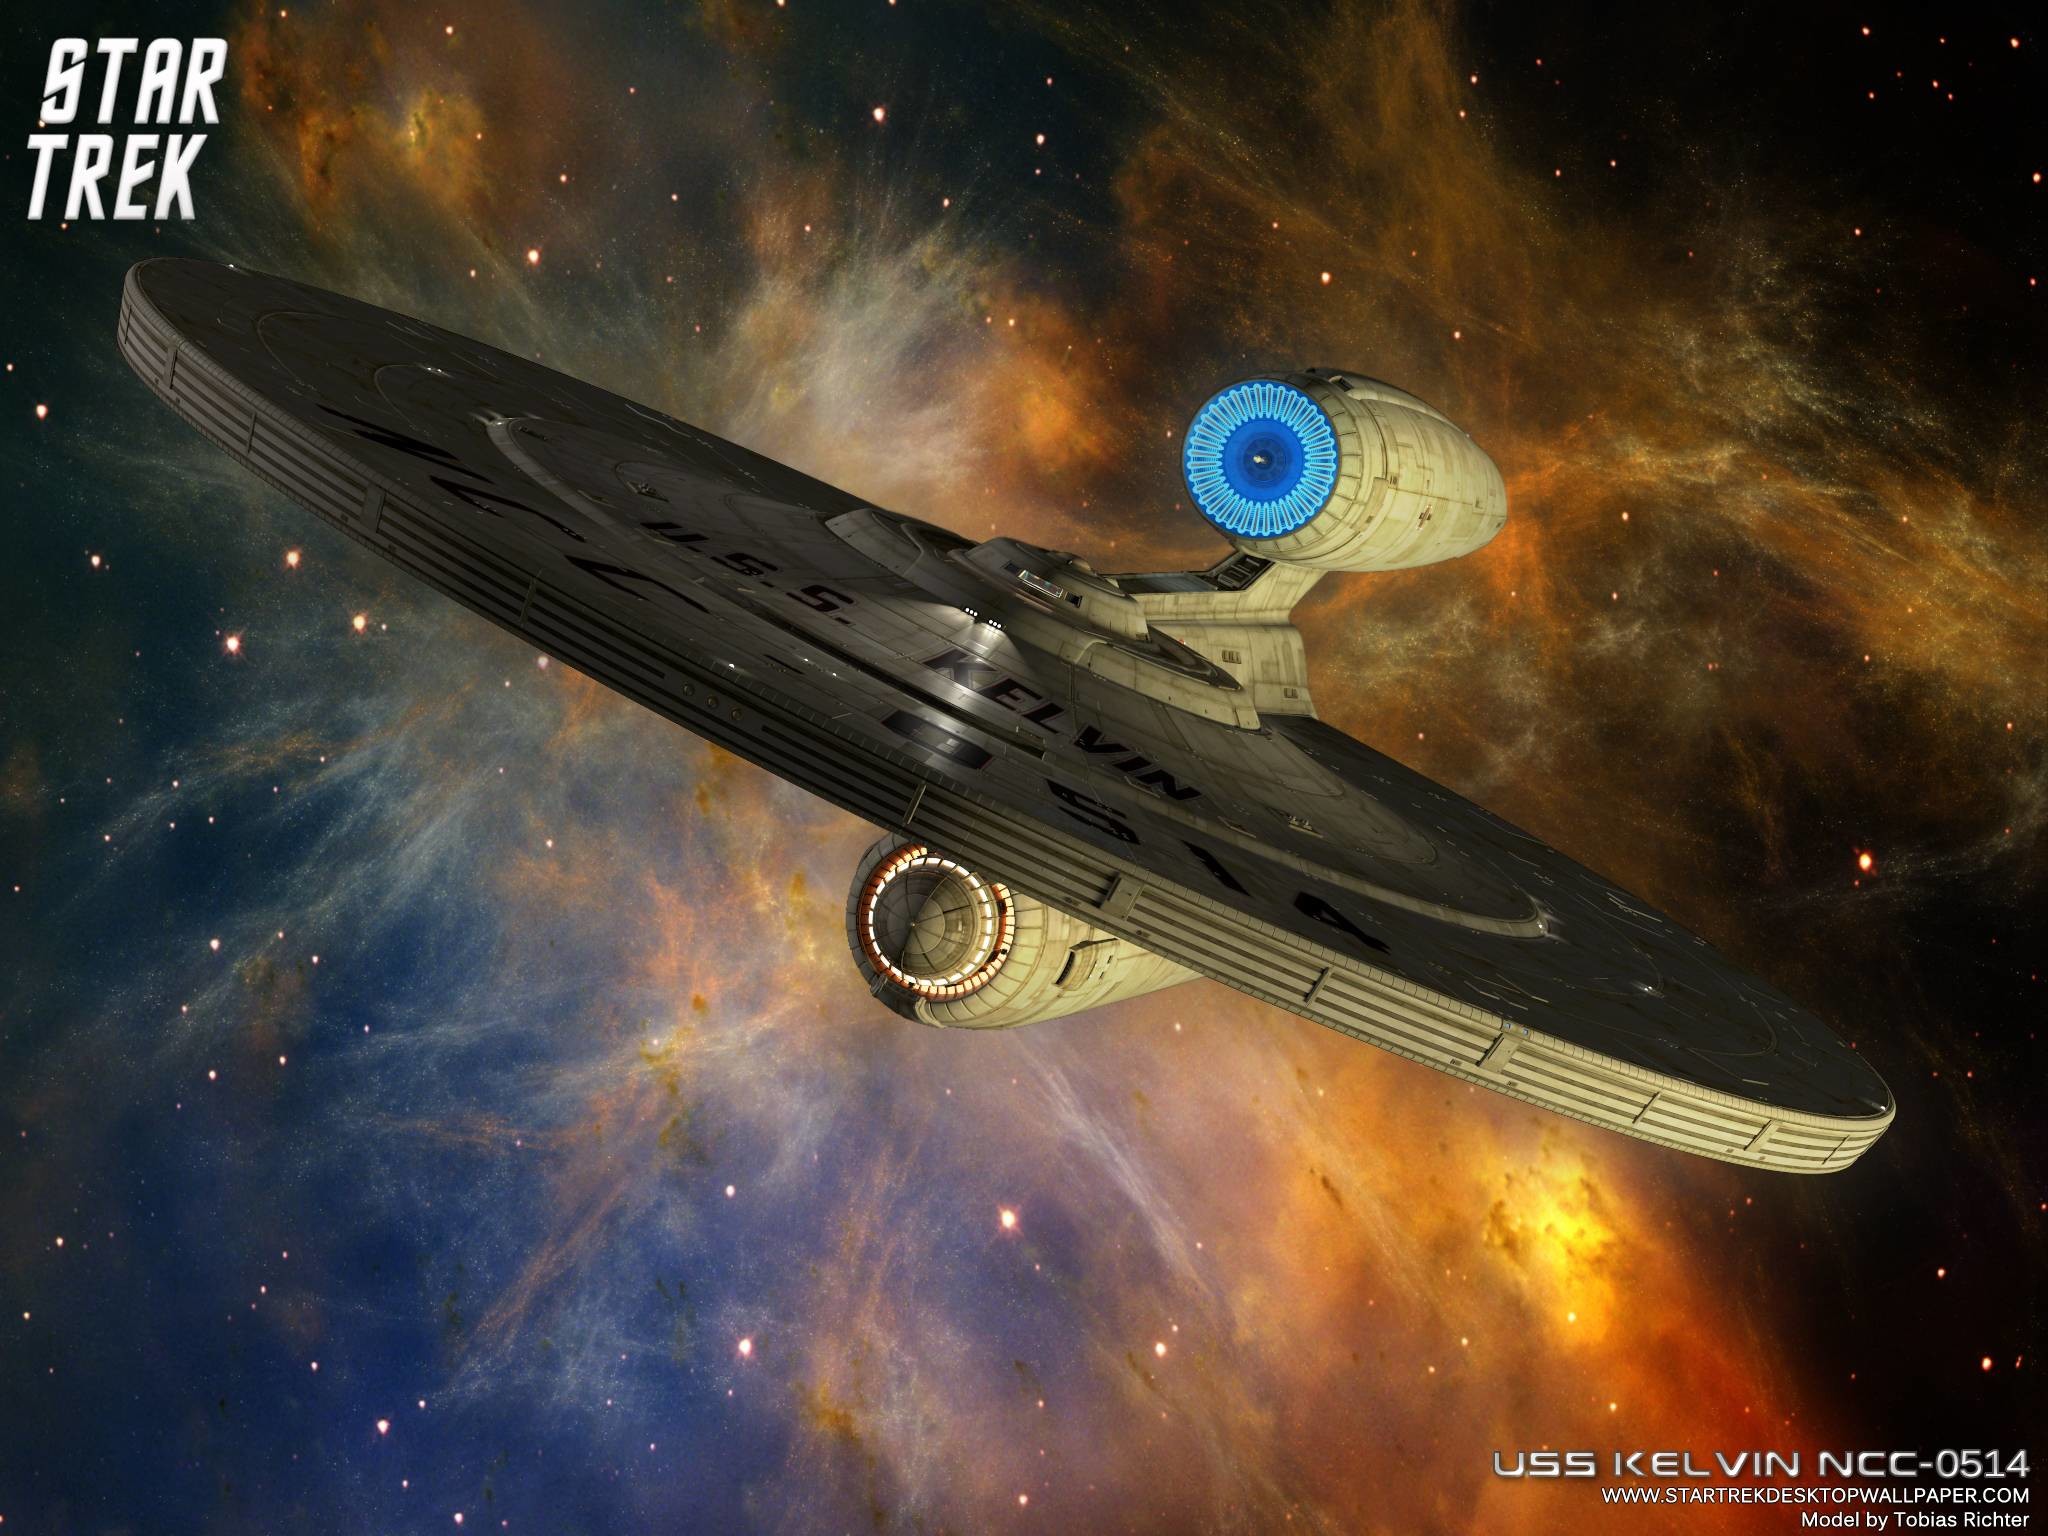 Star Trek Federation Star Ship USS Kelvin NCC 0514, free Star Trek .